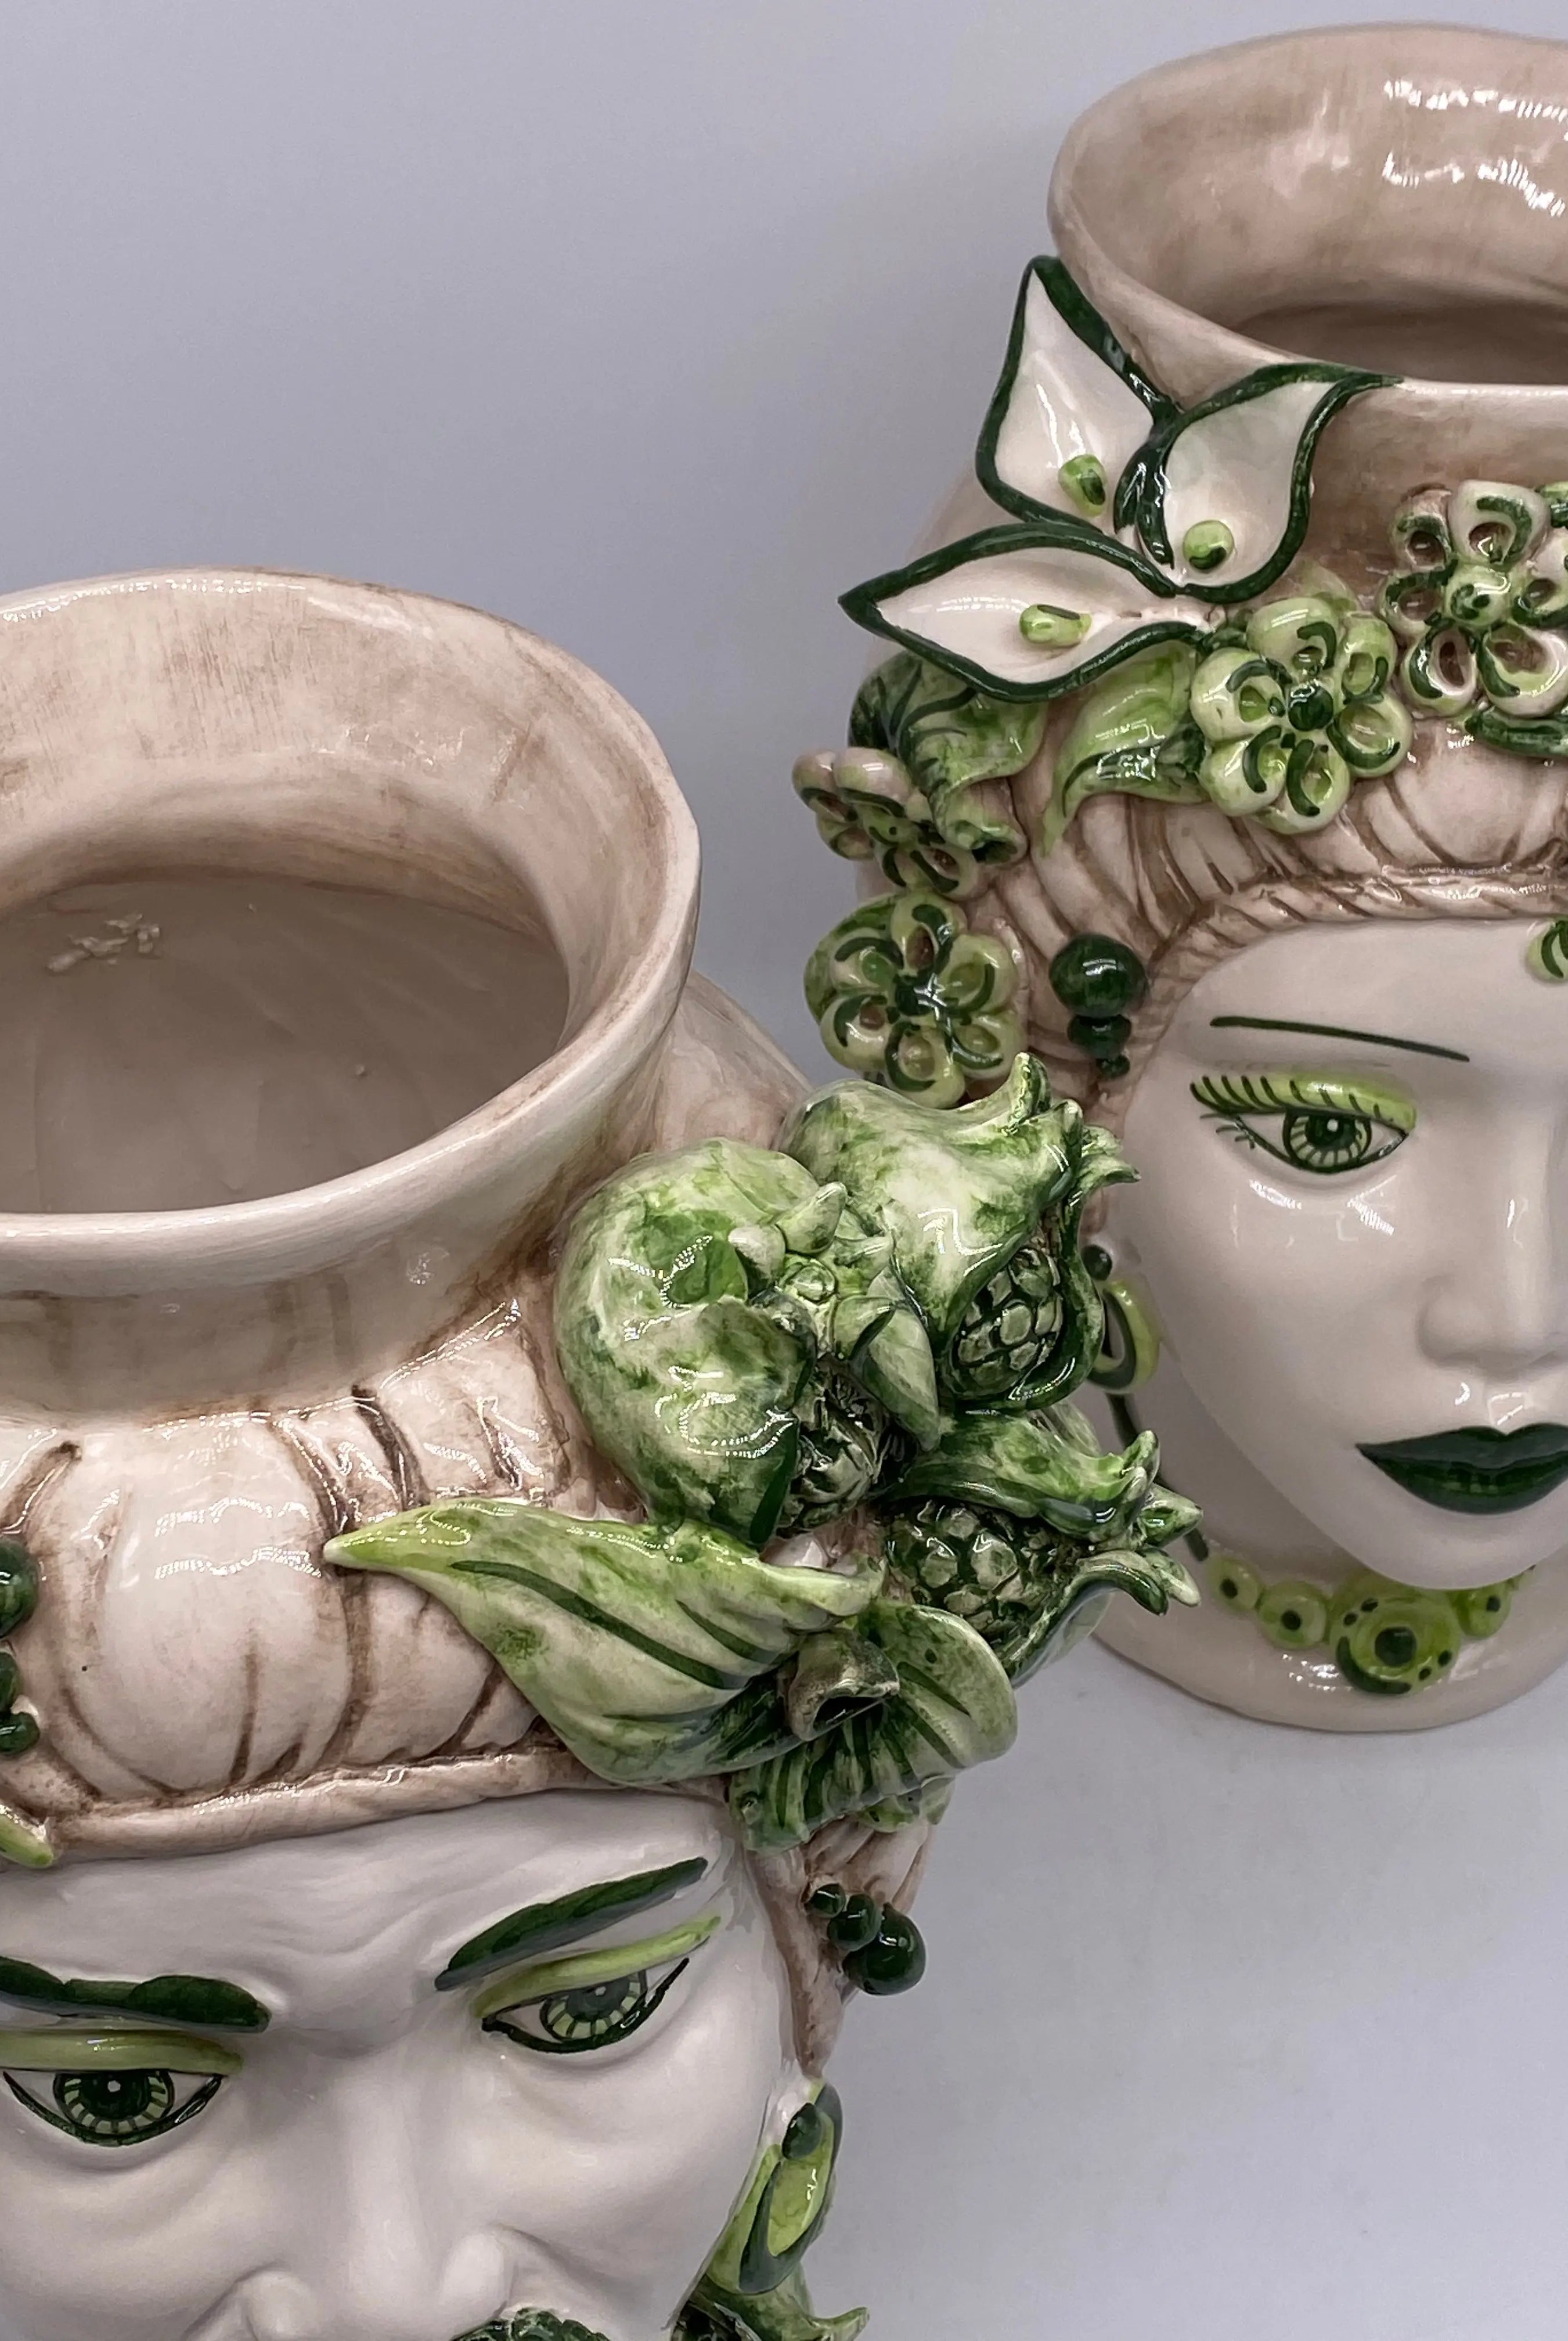 Teste di Moro Mediterraneo Ceramica Caltagirone cm H.29 L.22 Artigianale Bicolore Verde DD CERAMICHE SICILIANE